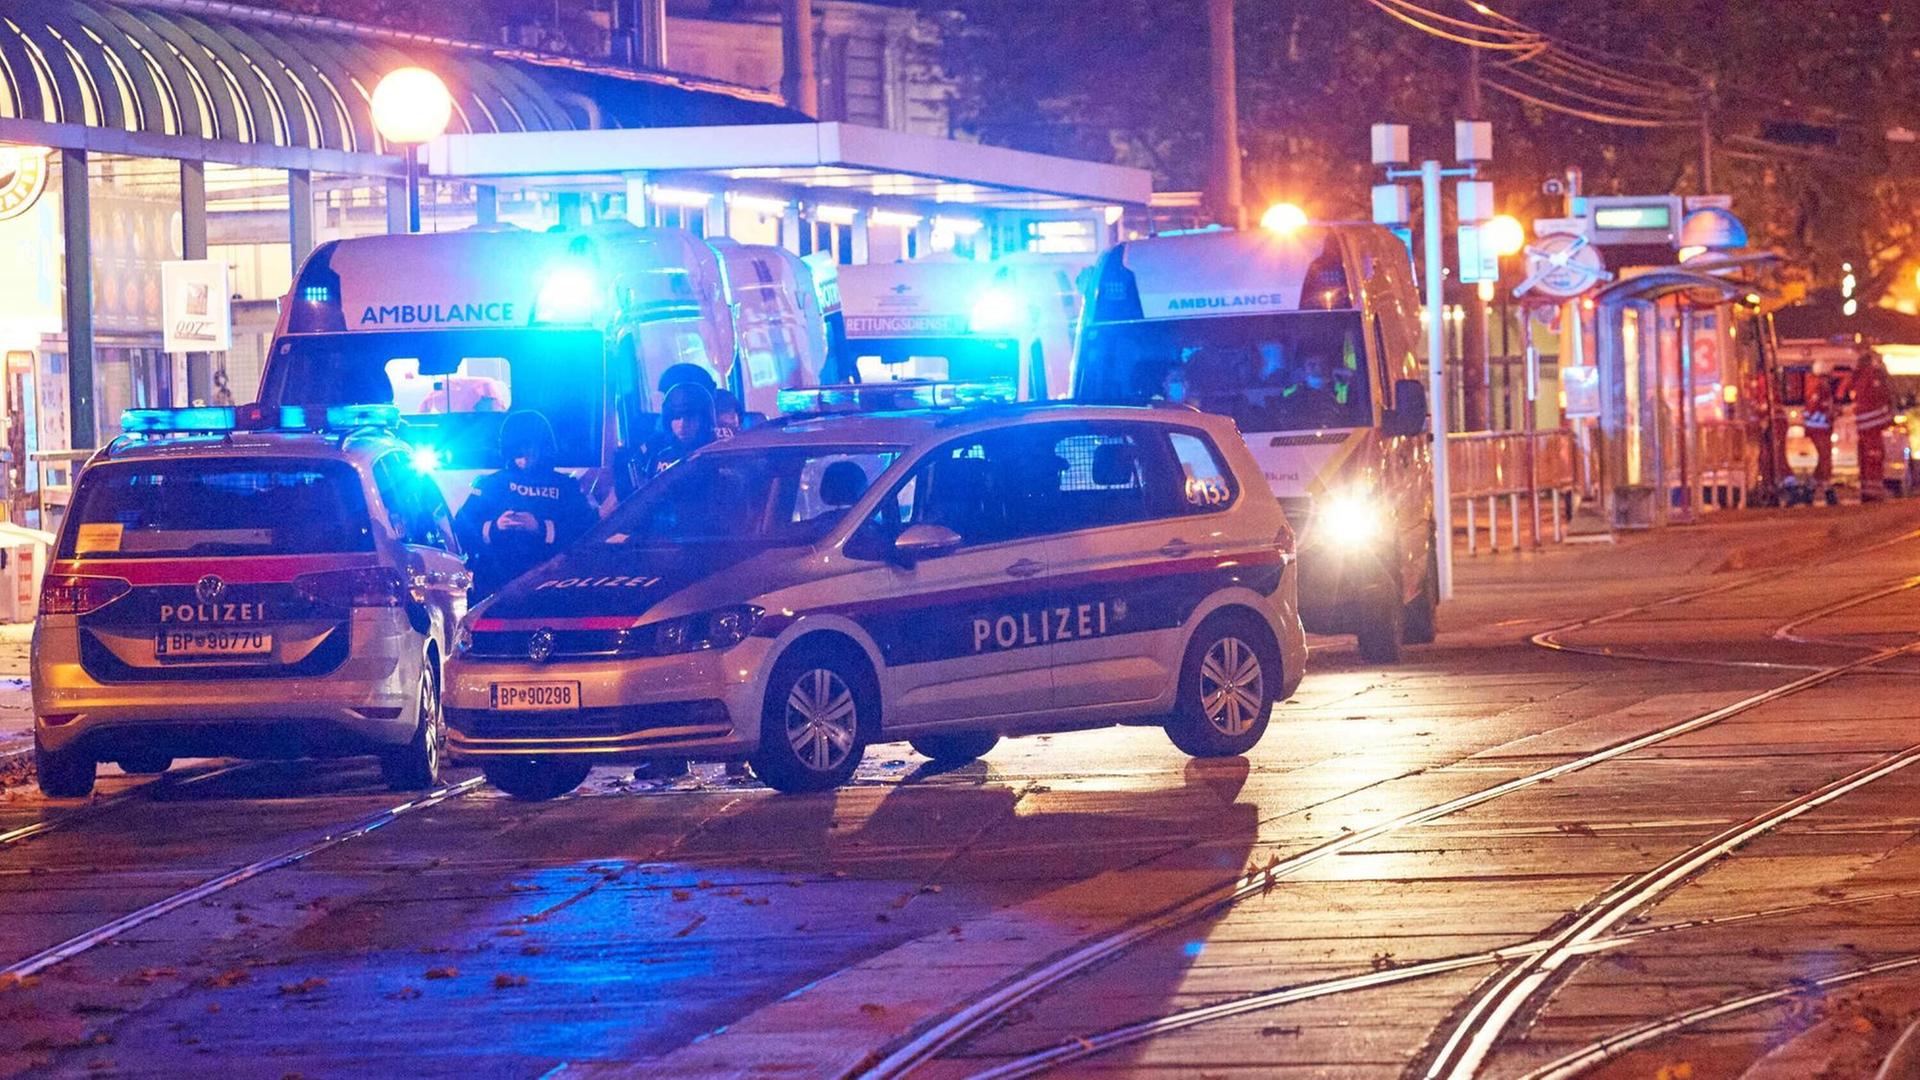 Polizei-Wagen in der Stadt Wien nach dem Anschlag.